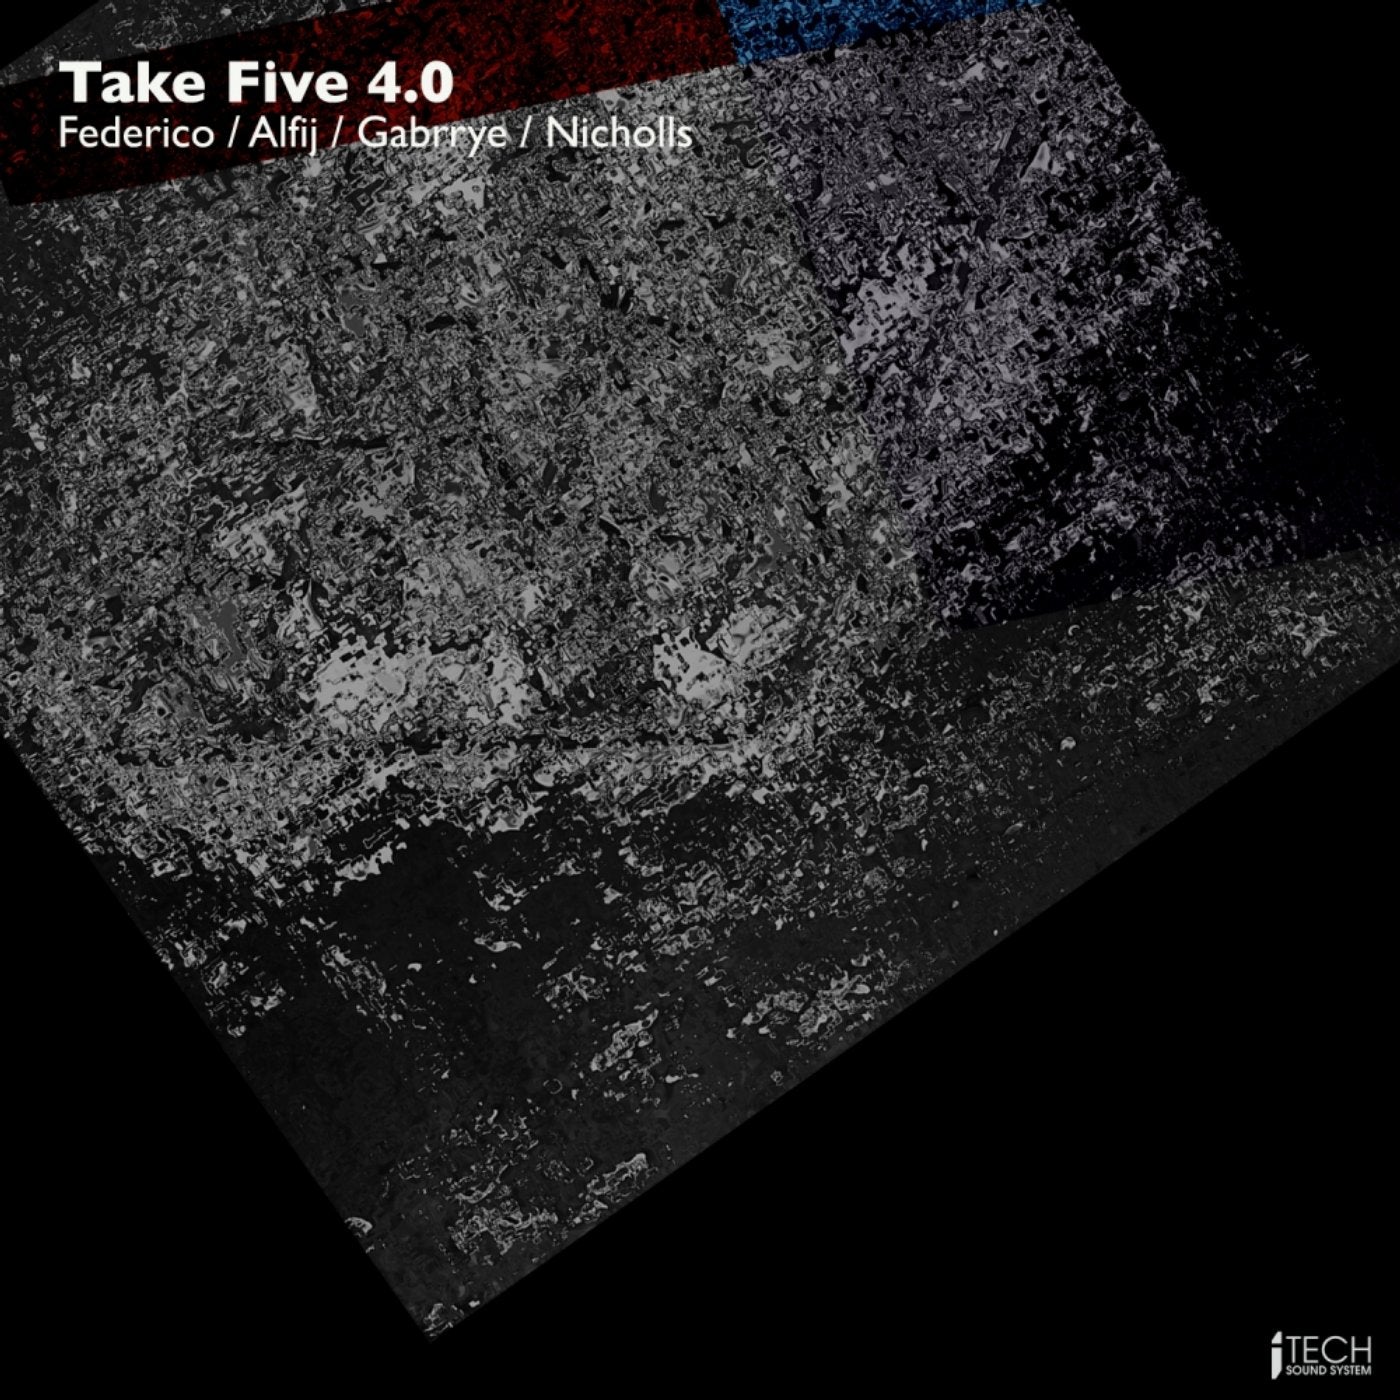 Take Five 4.0